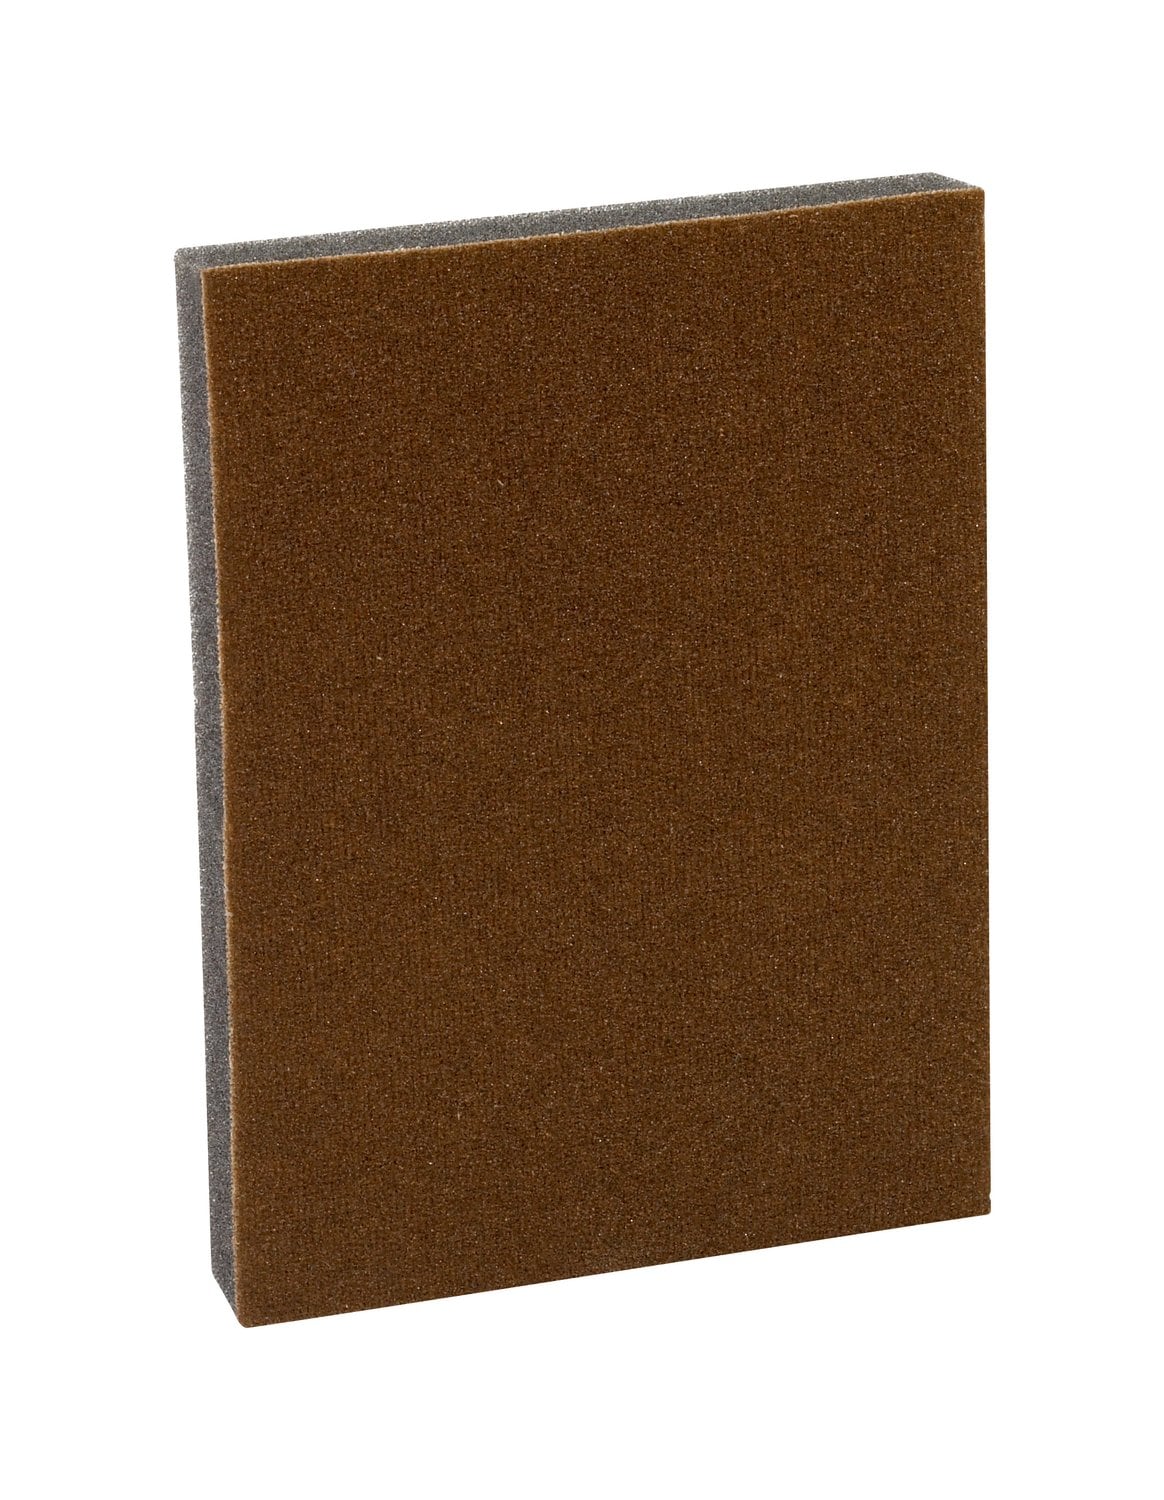 7010312922 - 3M Pro-Pad Sanding Sponge, PRPD-150, 2.88 in x 4 in x .5 in, 150 Grit,
54/cs